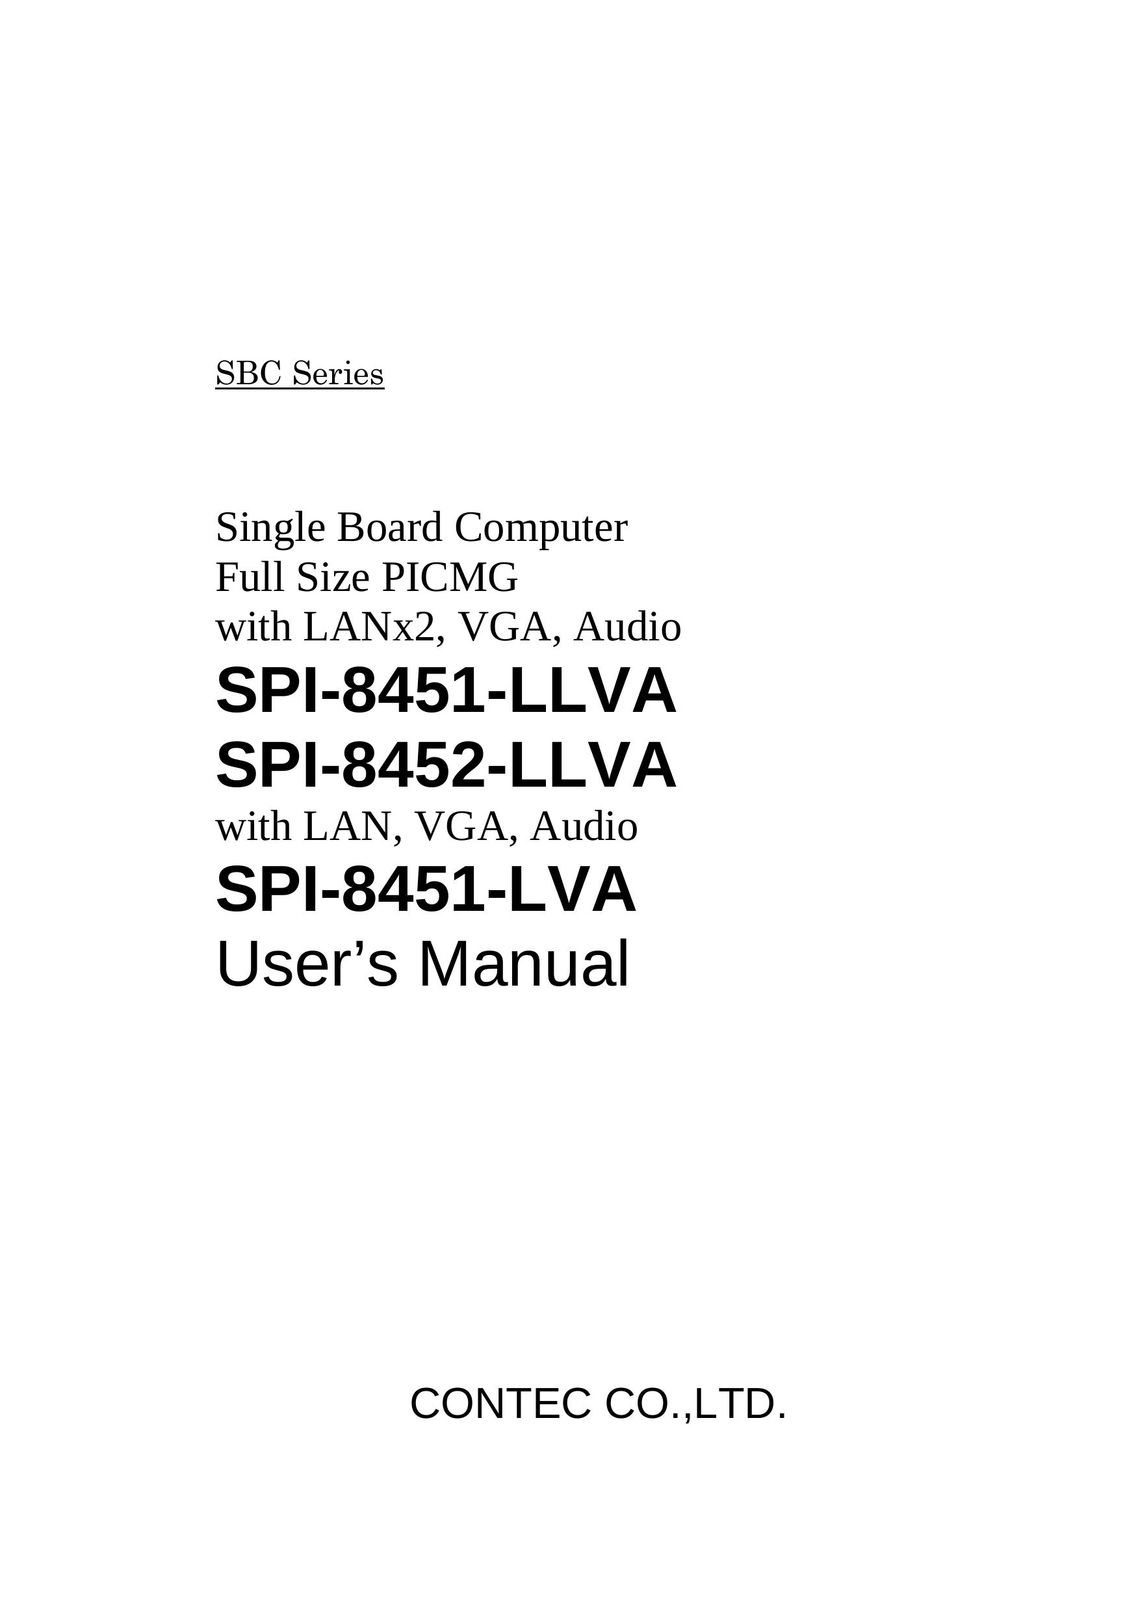 Contec SPI-8451-LVA Computer Hardware User Manual